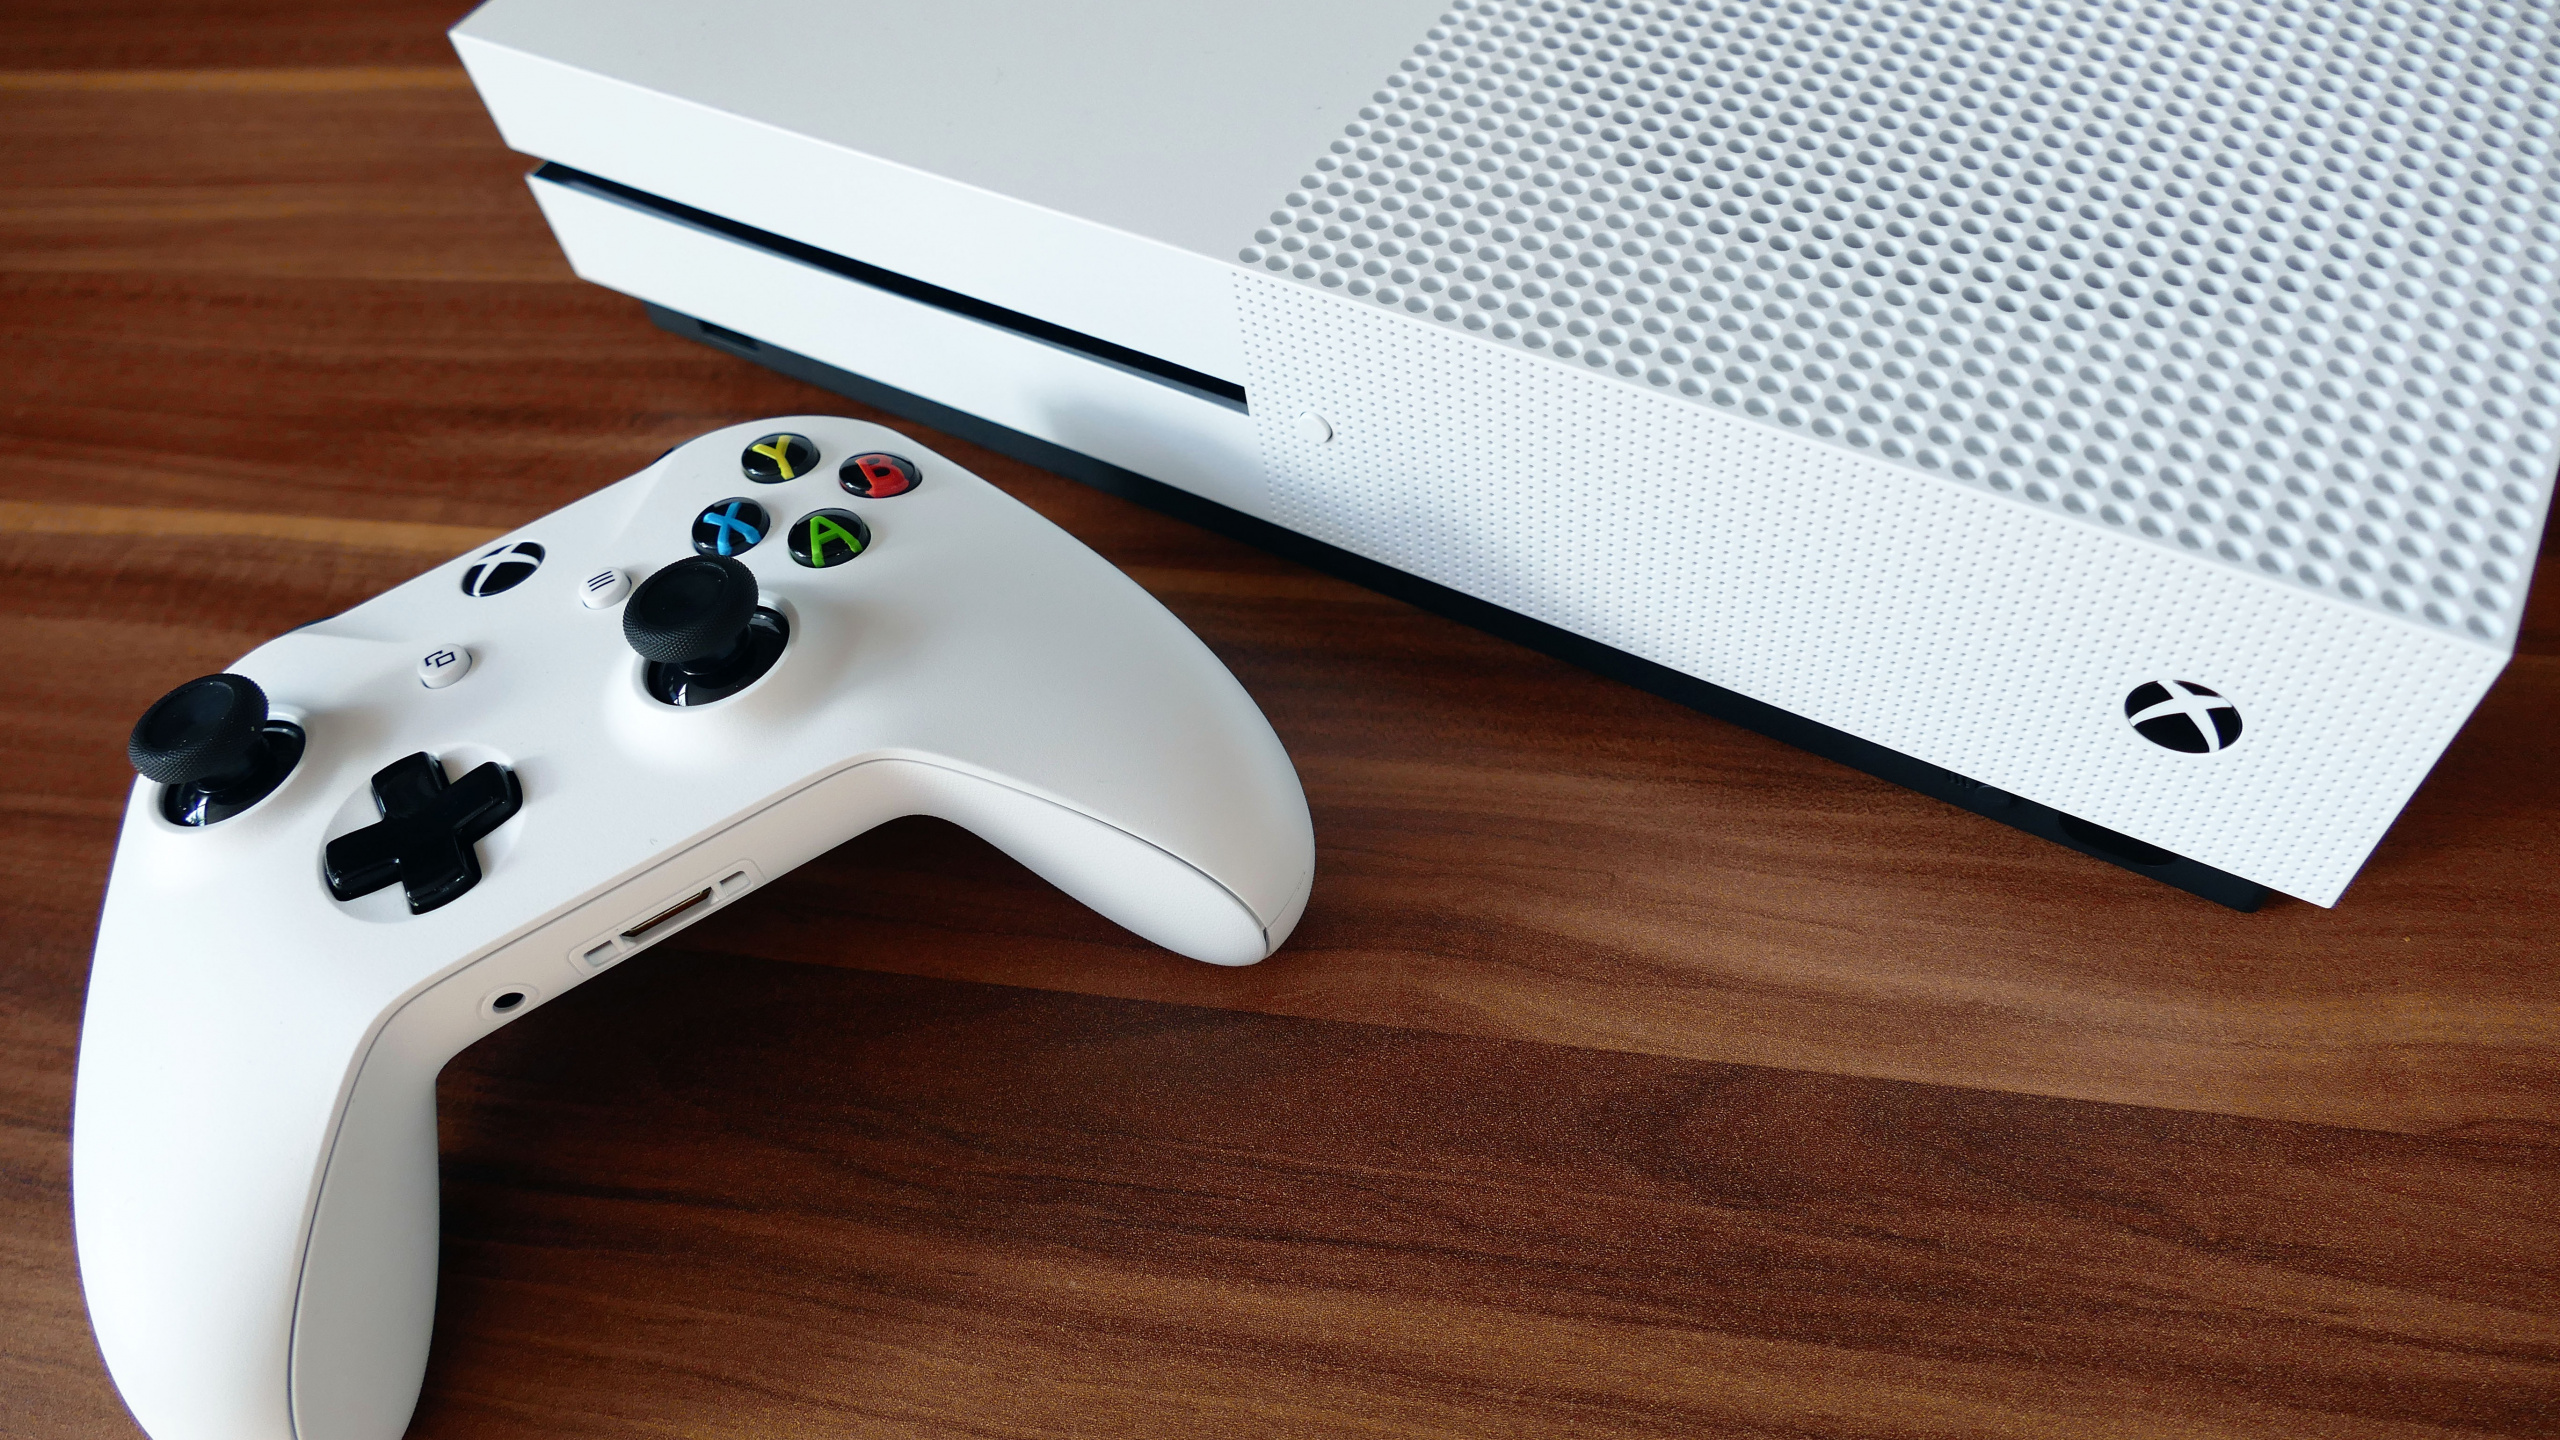 Consola Xbox One Blanca y Controlador de Juegos. Wallpaper in 2560x1440 Resolution